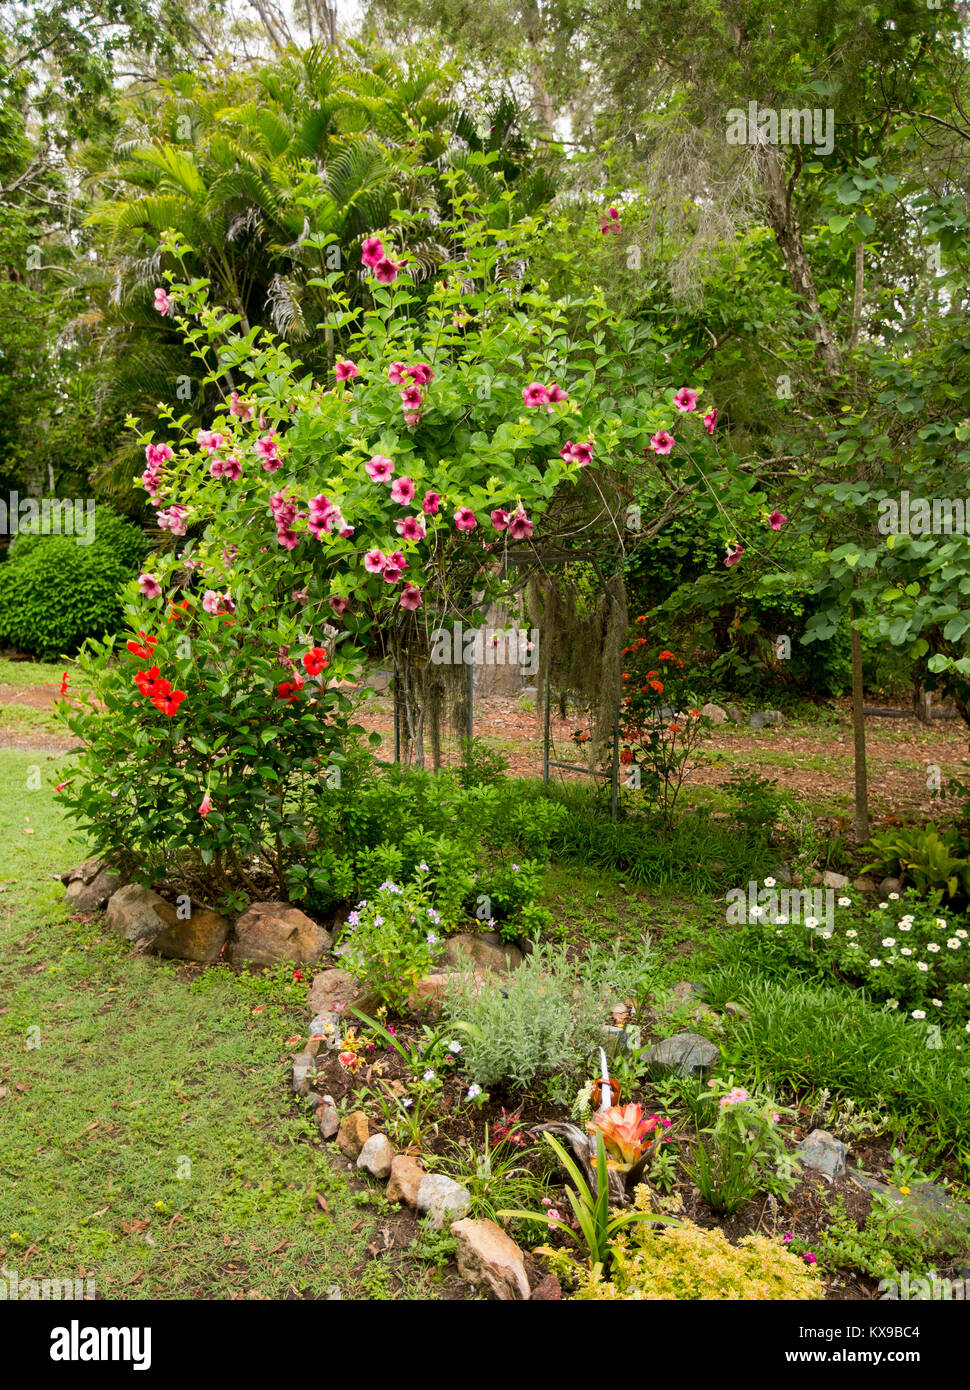 Pianta rampicante, l'Allamanda blanchettii con massa di rosso / viola fiori e fogliame verde che cresce su arch nel Giardino Australiano Foto Stock